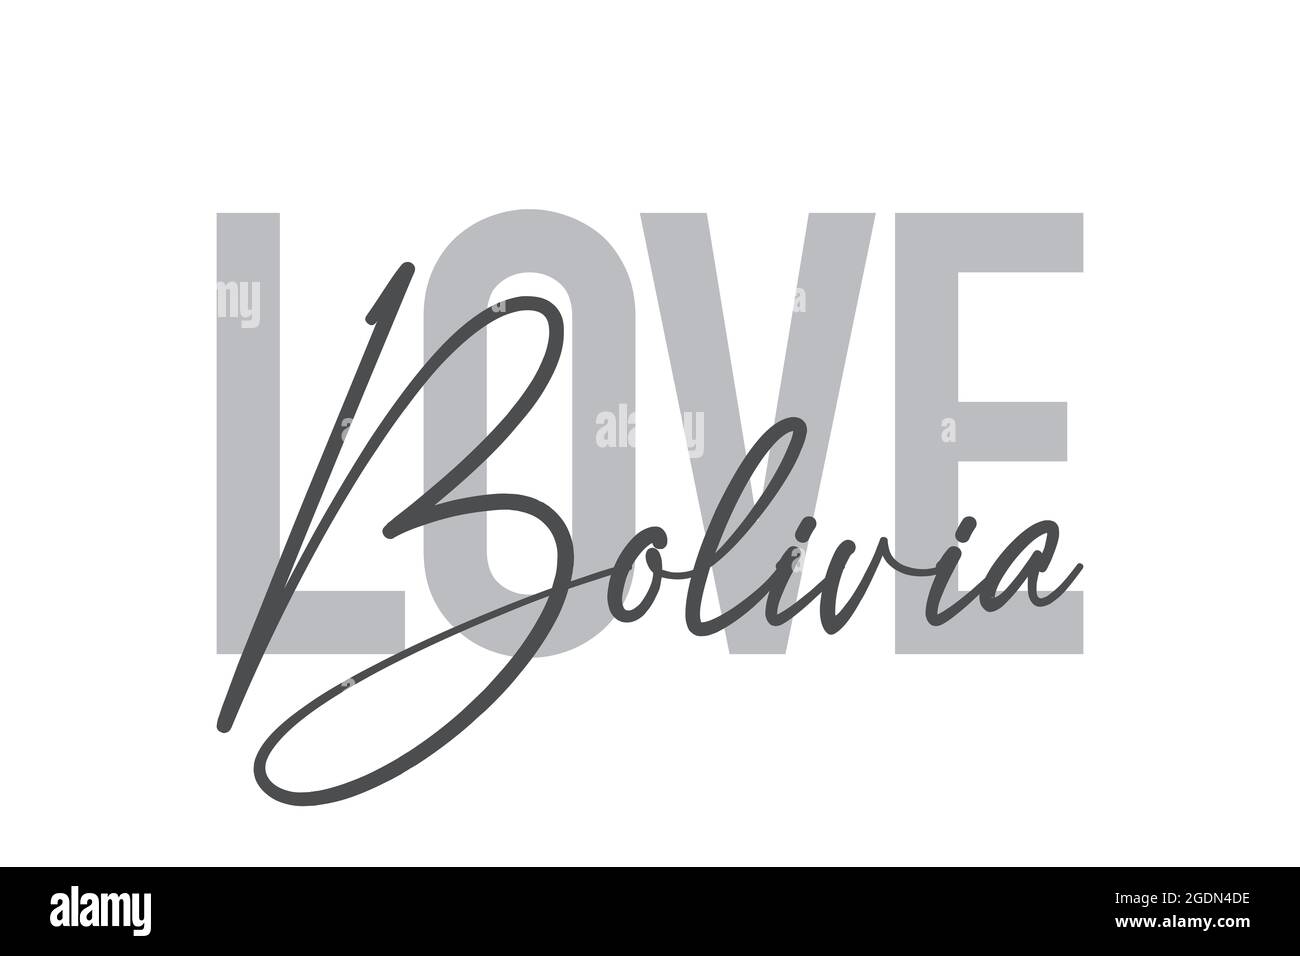 Conception typographique moderne, simple et minimaliste d'un dicton « Love Bolivia » dans des tons de gris. Art vectoriel graphique cool, urbain, tendance et ludique avec Banque D'Images